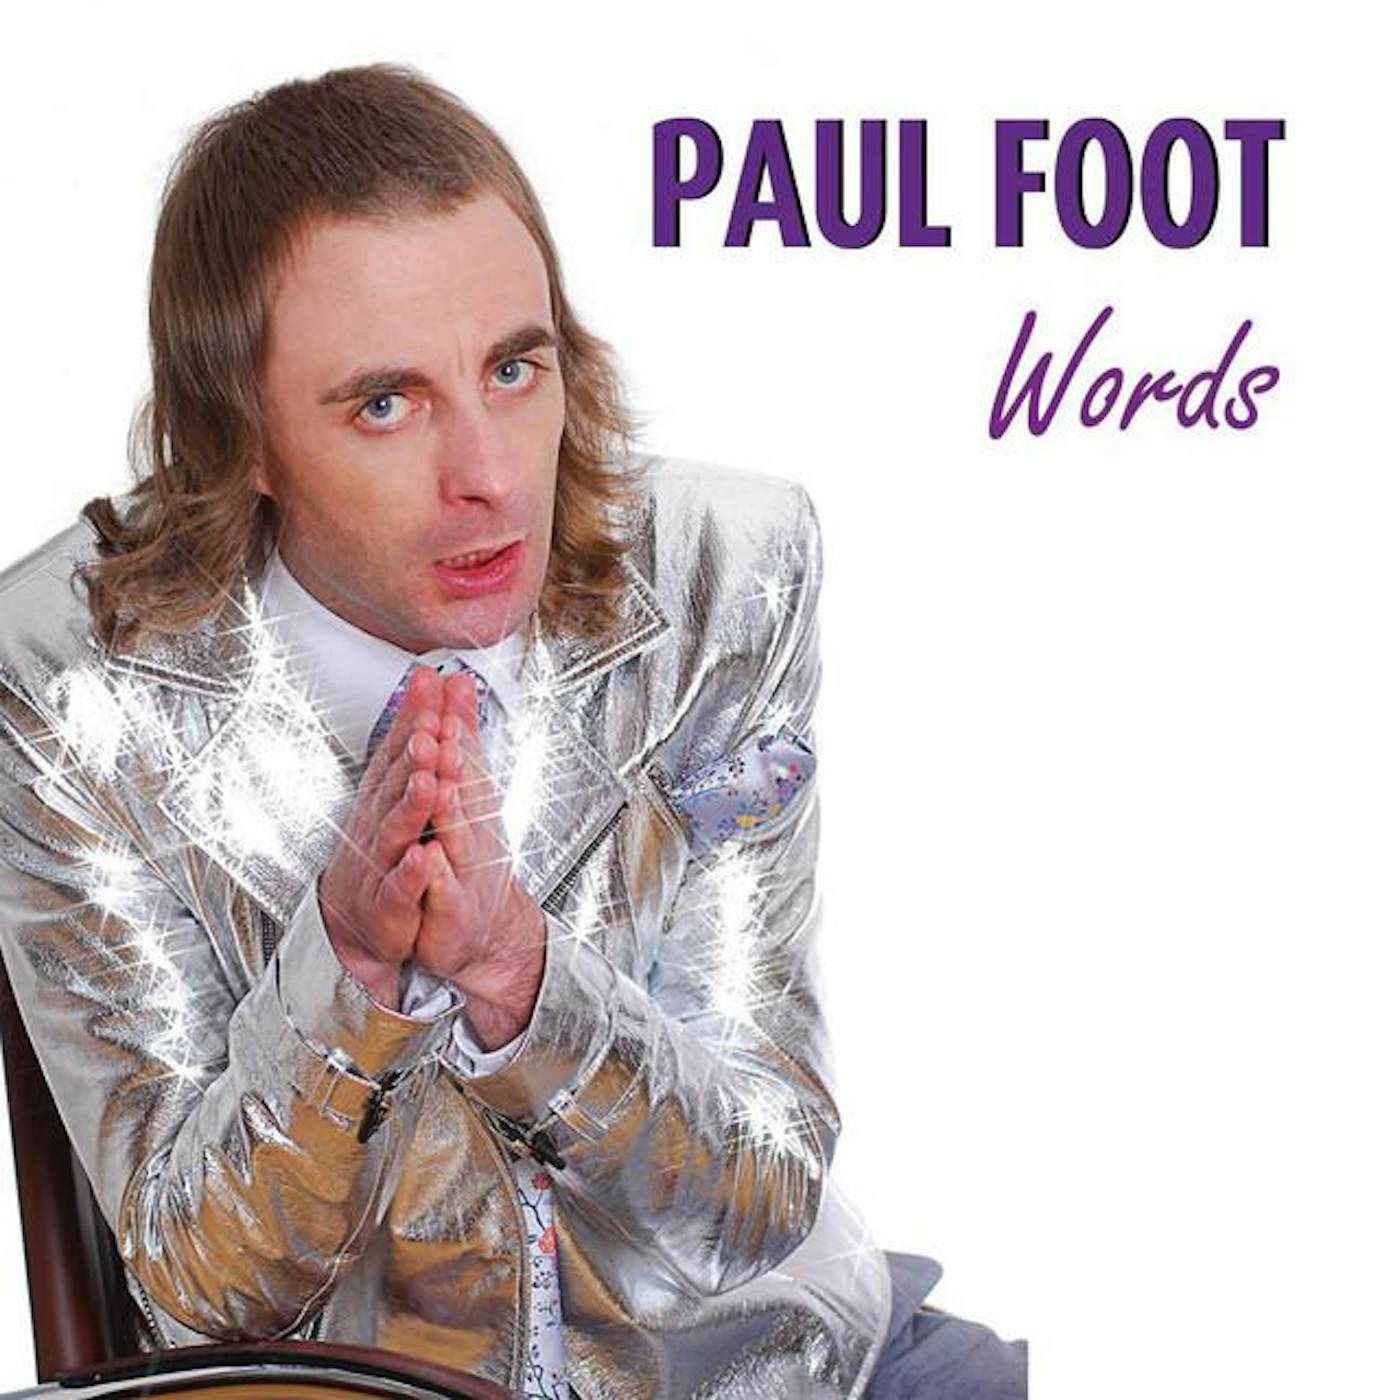 Paul Foot